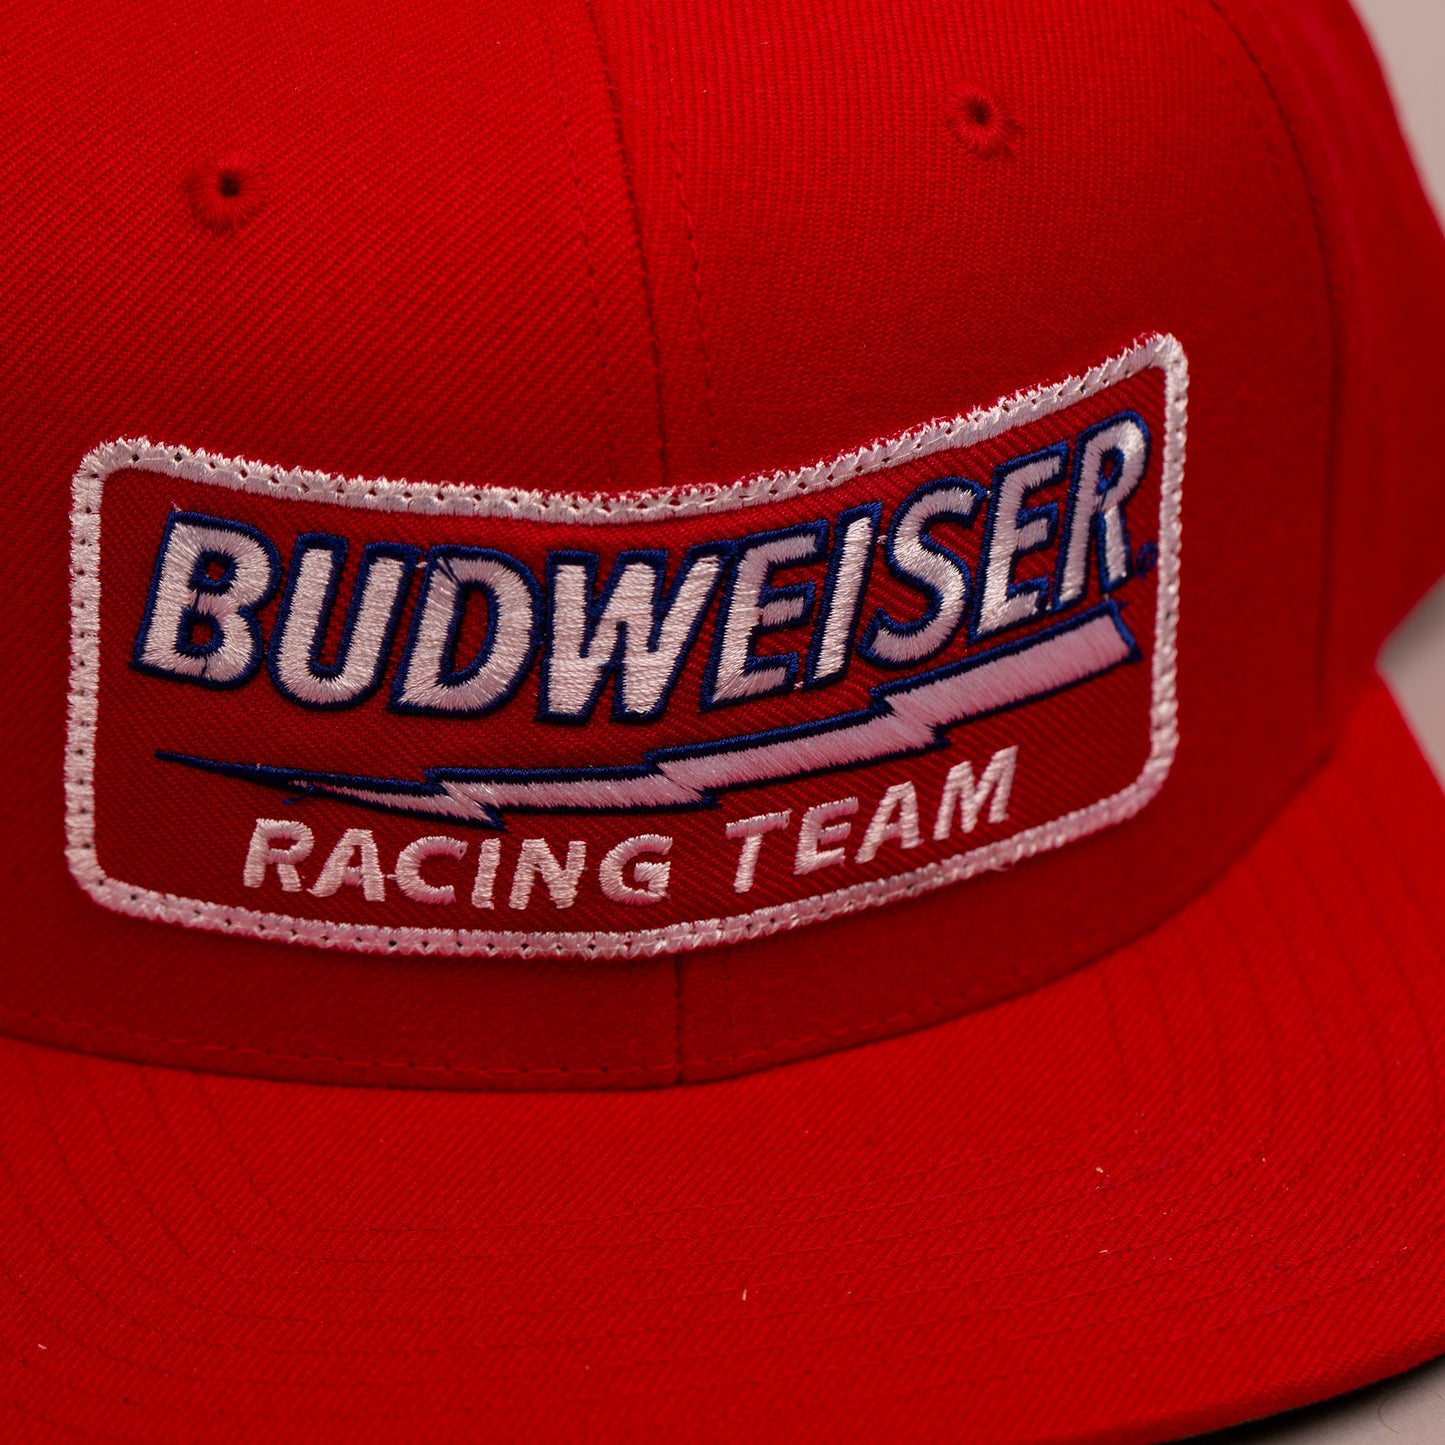 Budweiser Racing Team